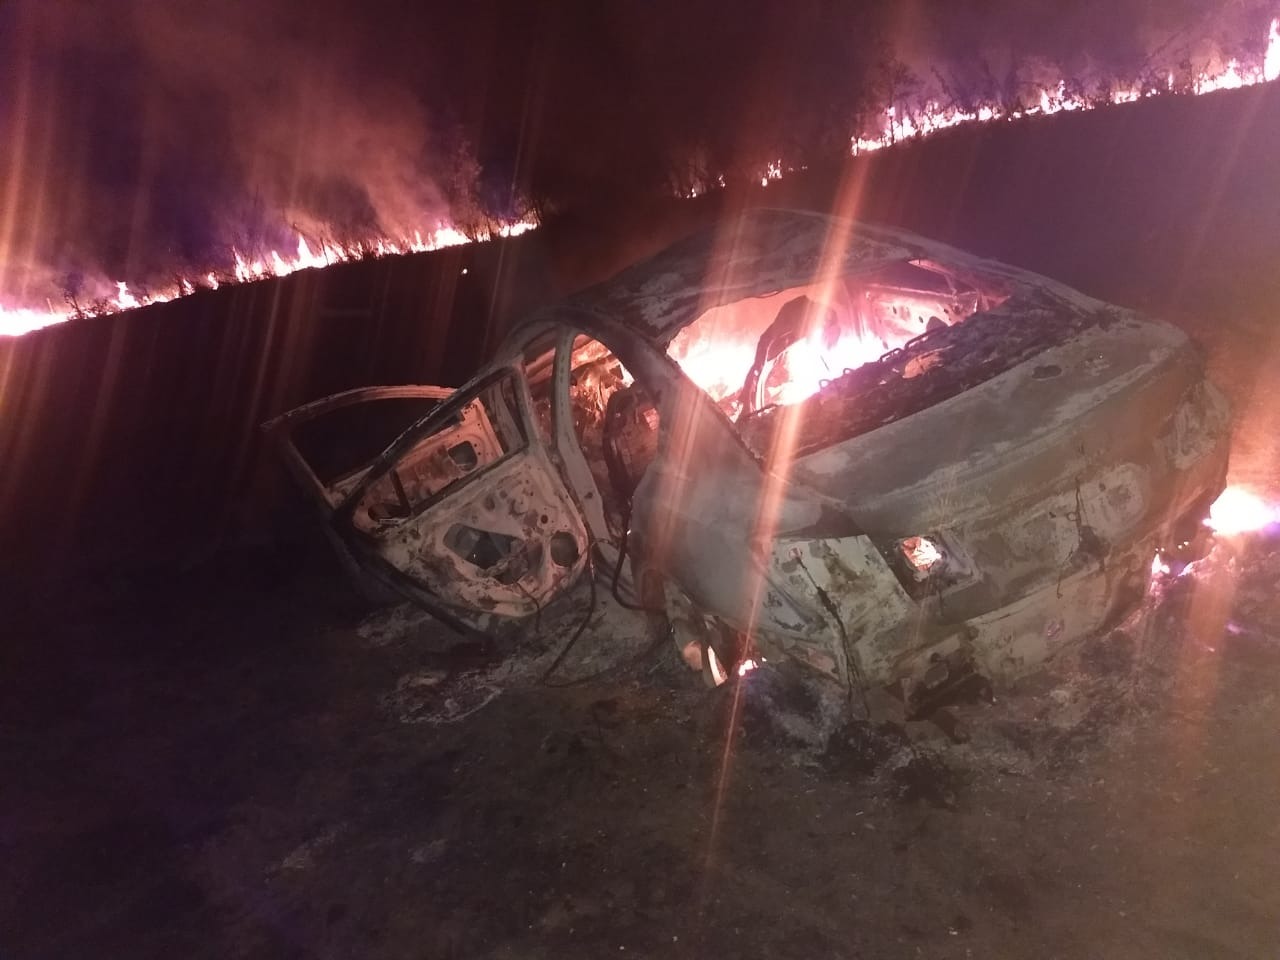 Veículo incendiado com o impacto. O motorista teve todos os pertences -incluindo documentos - queimados. O incêndio se alastrou pela mata. Foto: ArapuáMS